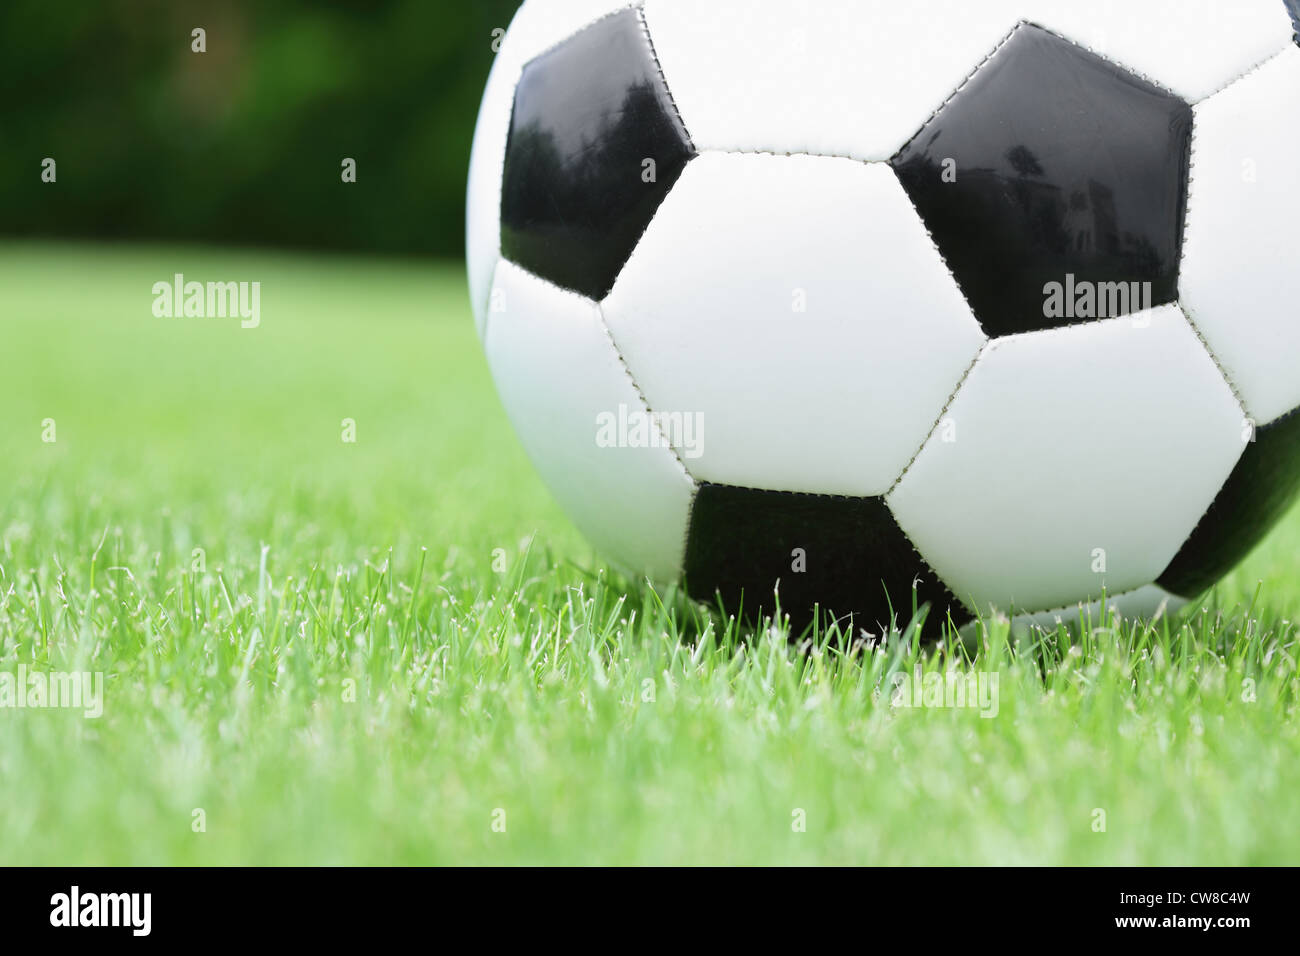 Cerca de un balón de fútbol Foto de stock